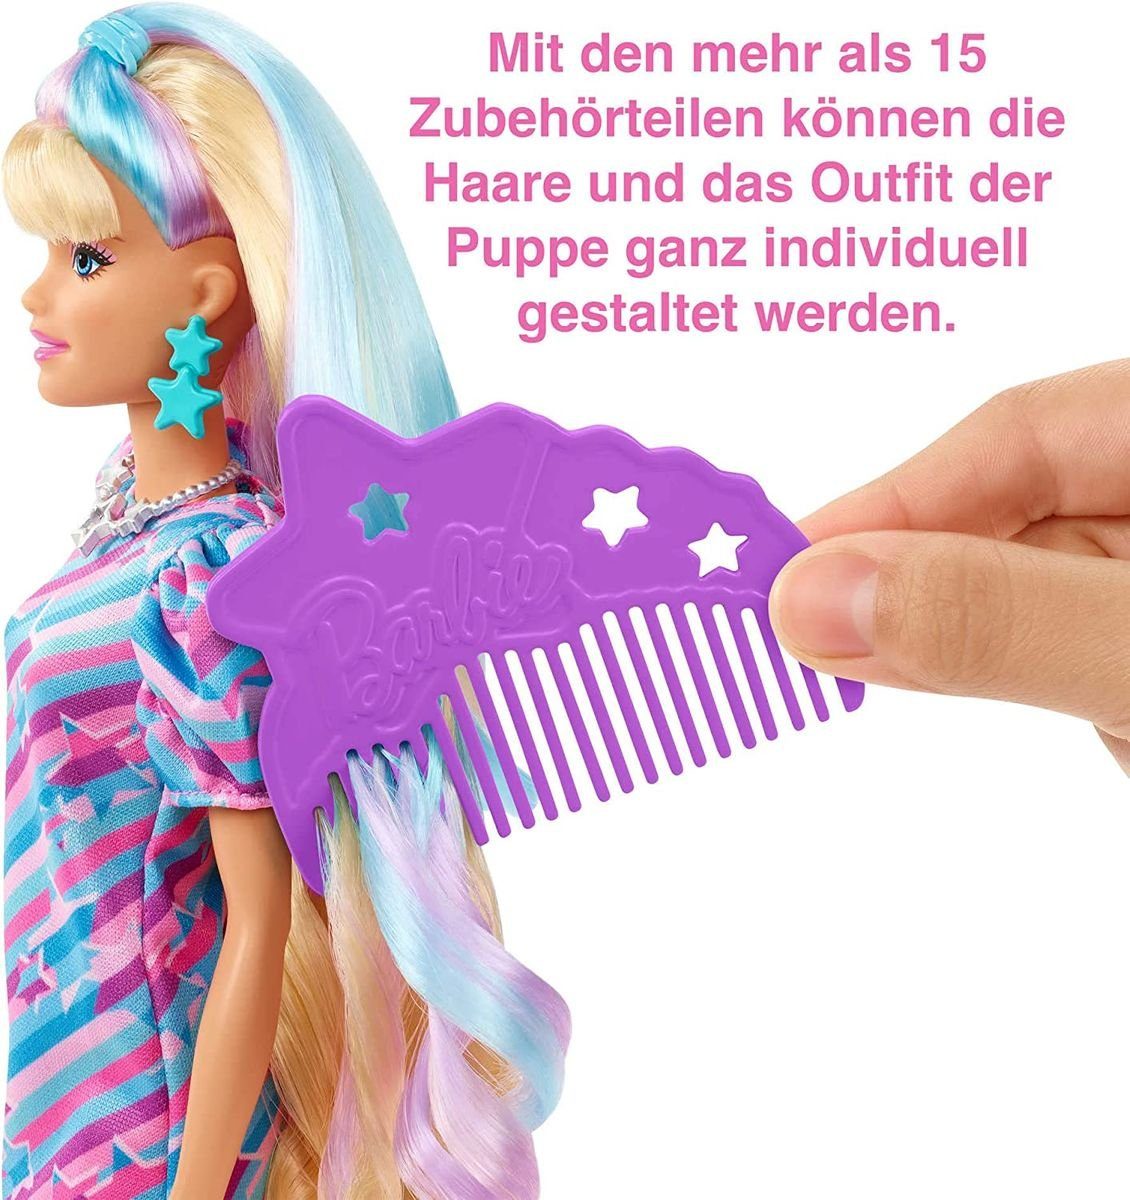 im Sternen-Print - - Zubehör Kleid Puppe Mattel - Stehpuppe Barbie Mattel® Totally mit HCM88 Hair